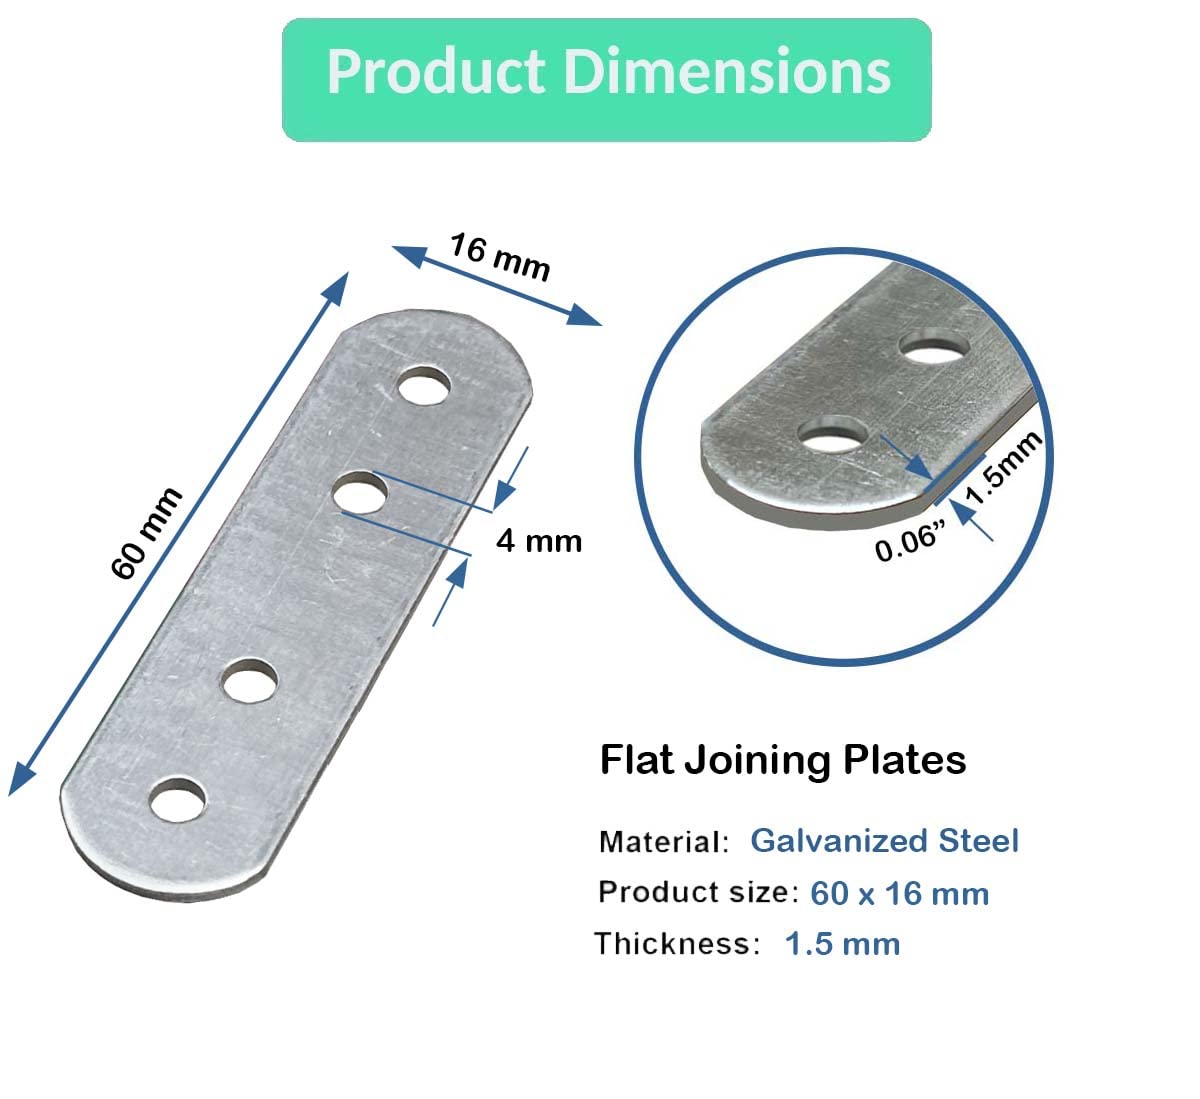 CNC-Aluminium-Stahl-Prototyping-Bearbeitung von Teilen, Laserschneiden und Fräsen